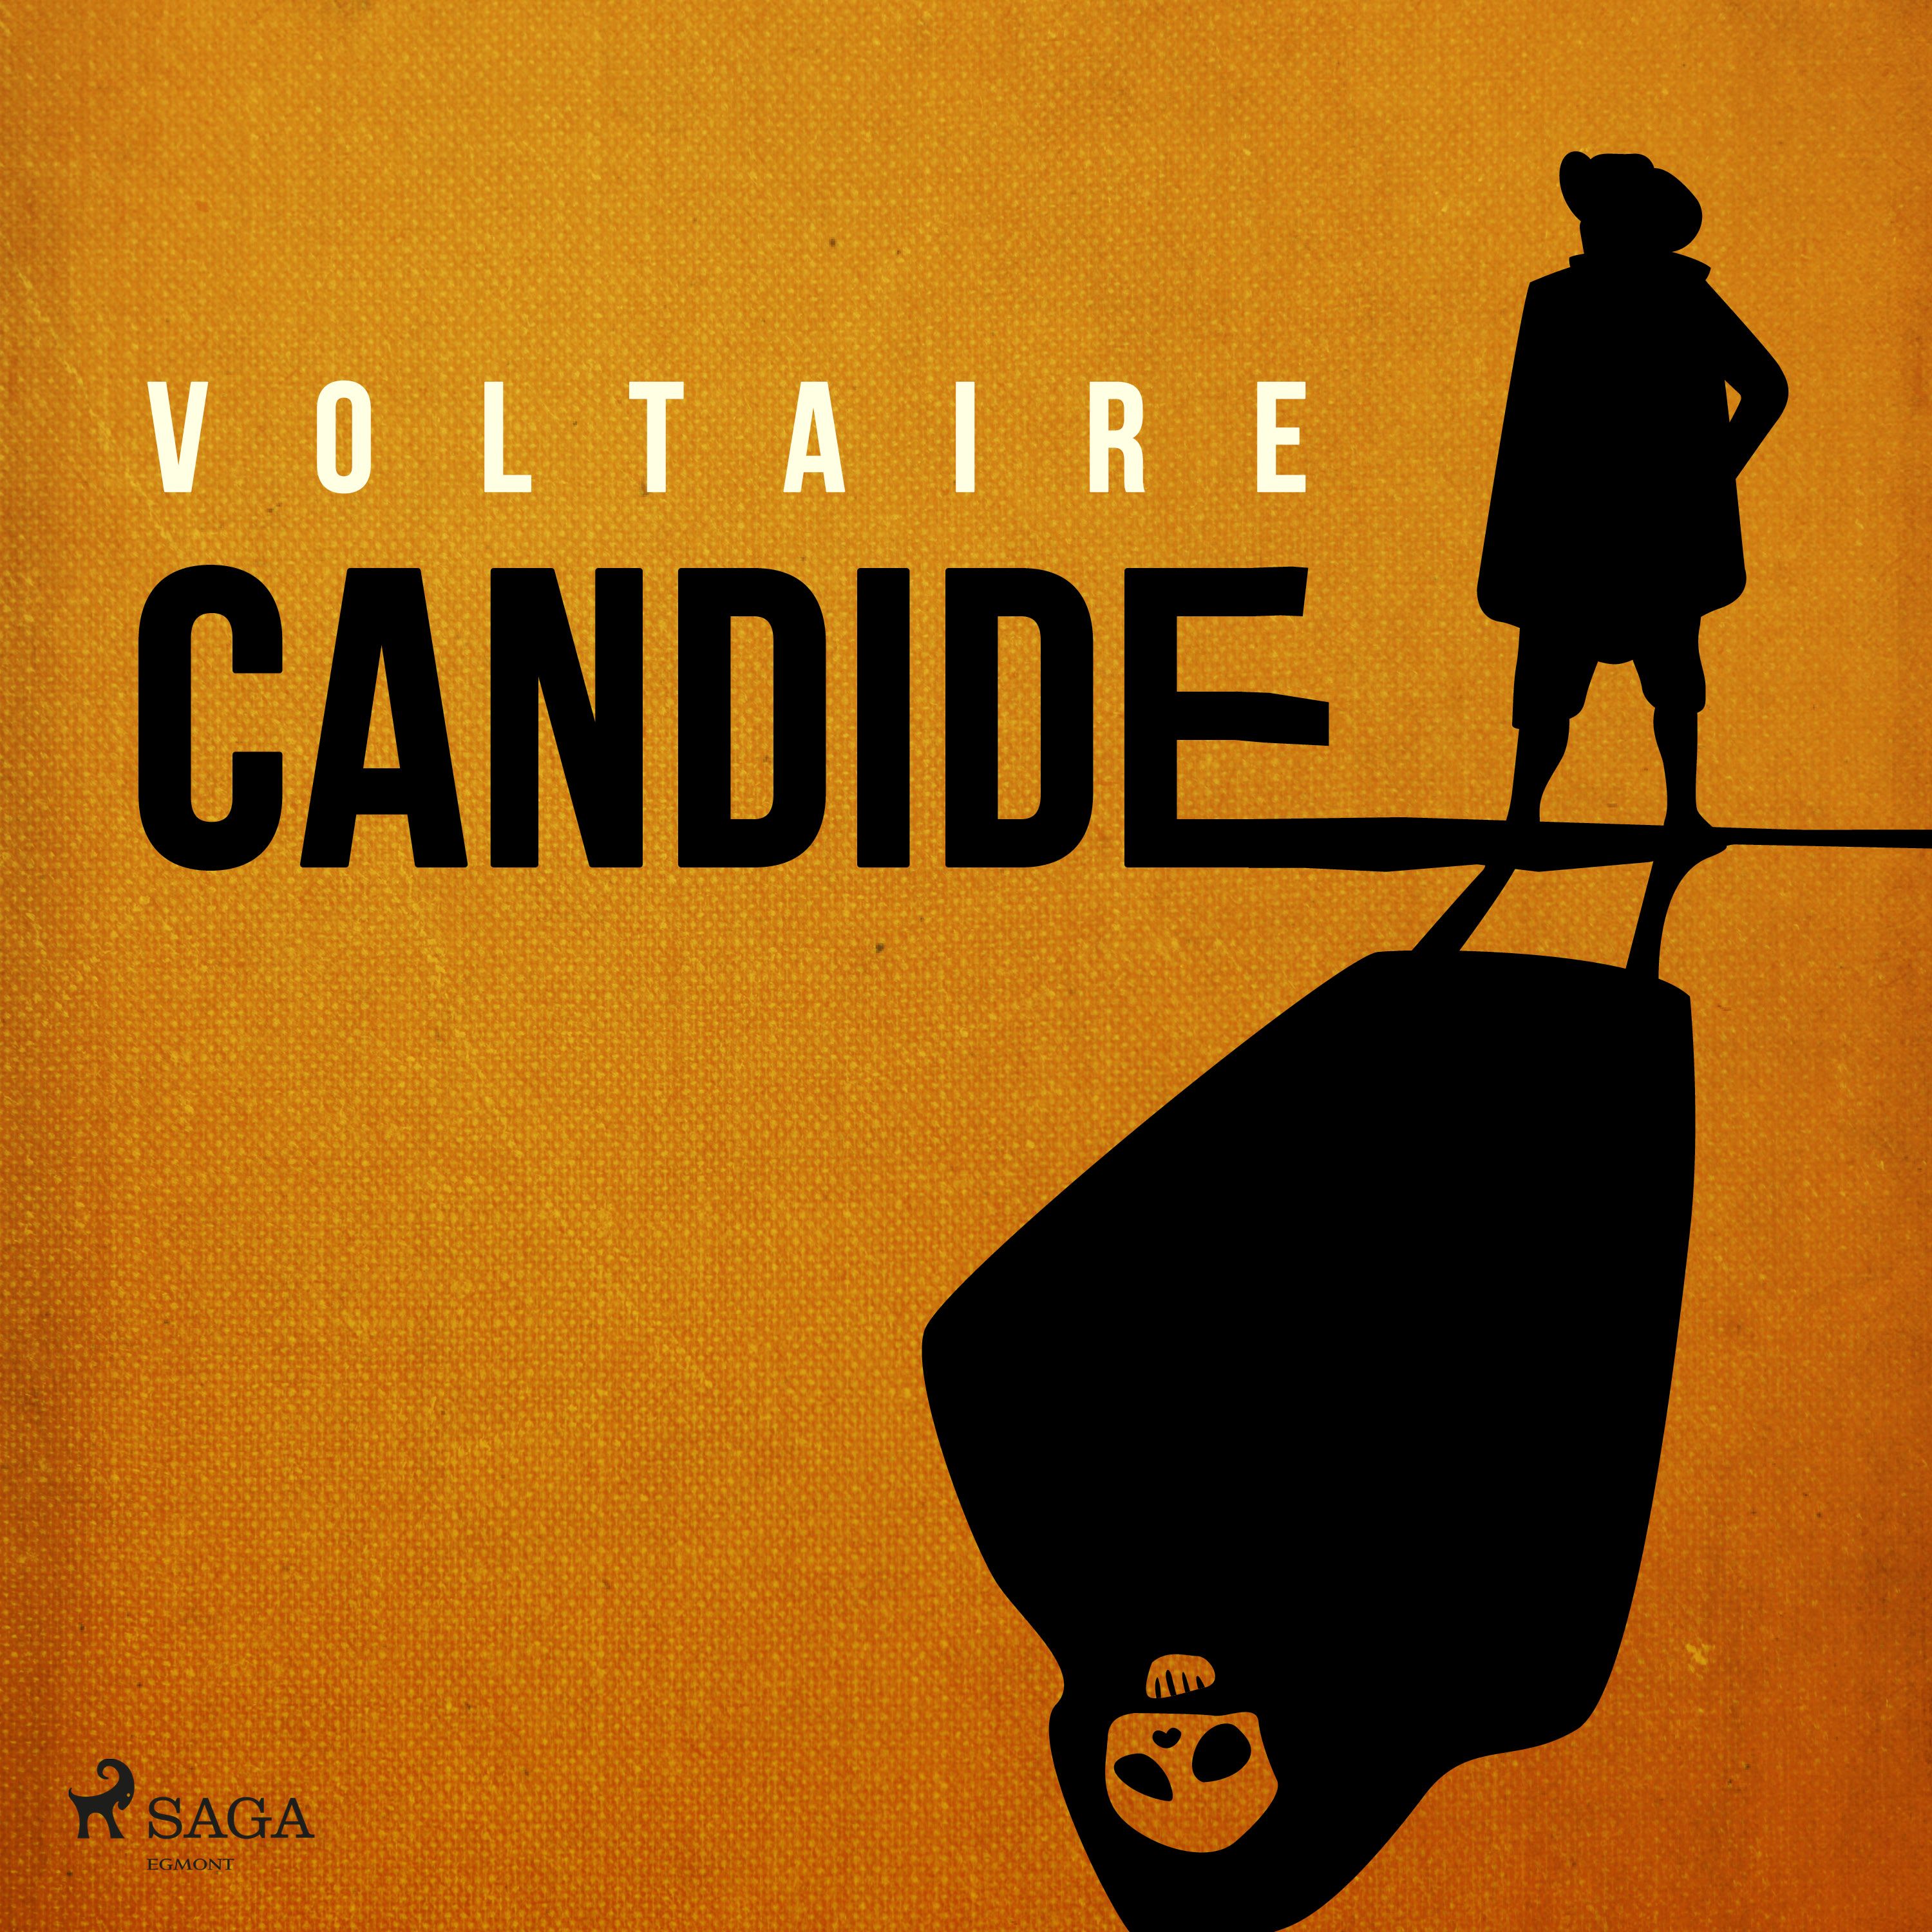 Candide, lydbog af Voltaire